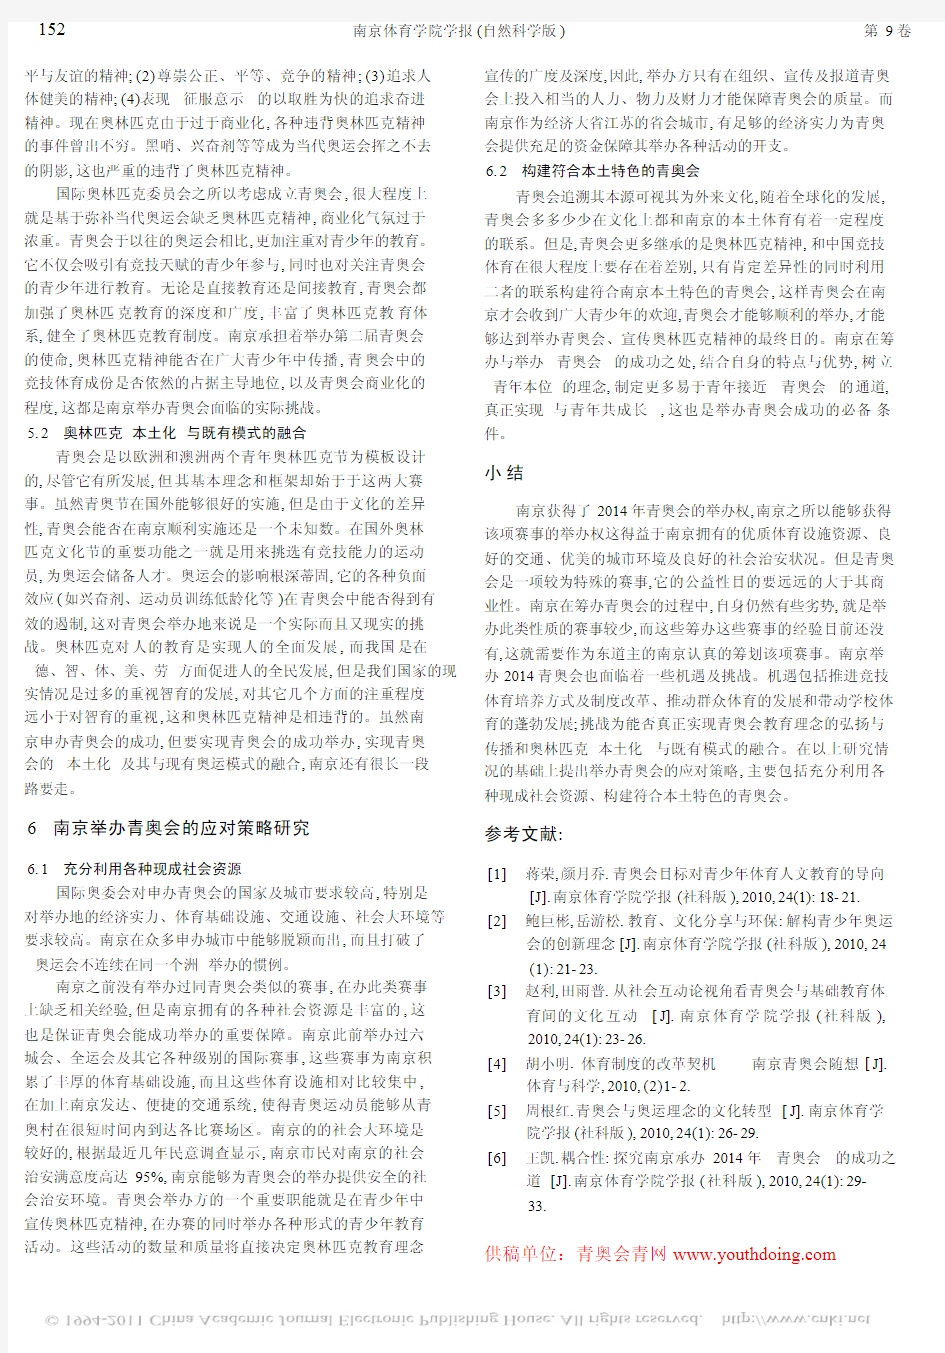 2014年南京青奥会SWOT分析及应对策略研究(三)_青奥会青网